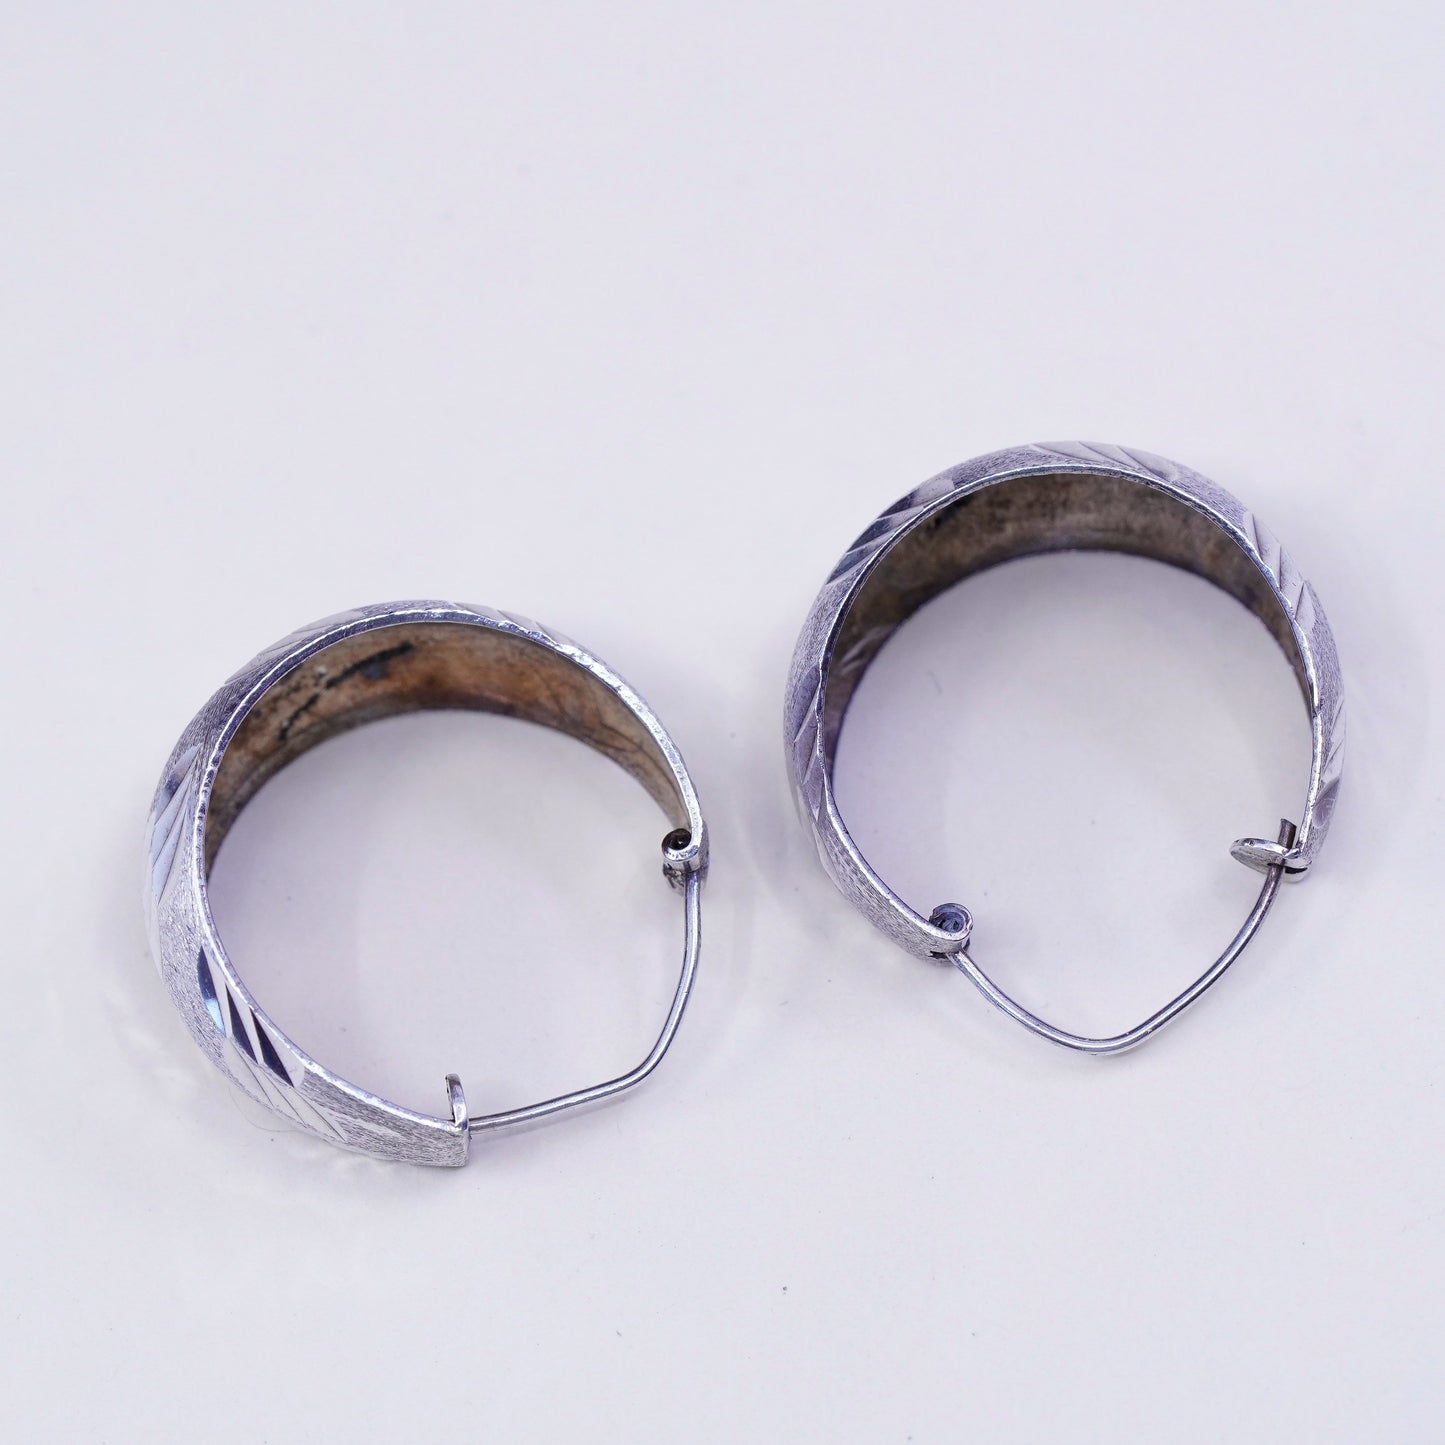 1”, Vintage sterling silver handmade earrings, textured 925 huggie hoops